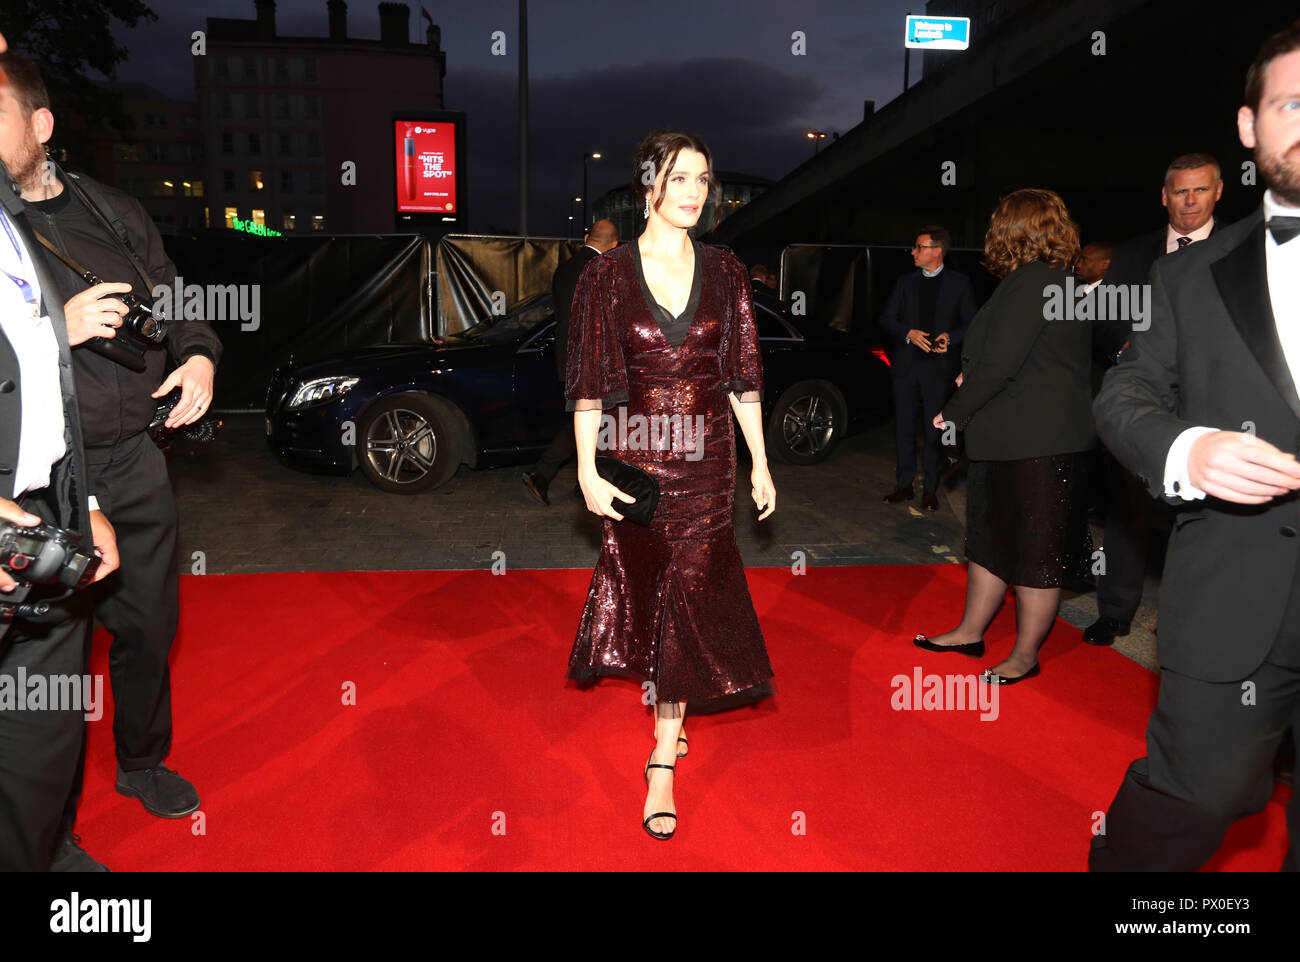 Rachel Weisz participant à la UK premiere du favori à la BFI Southbank pour la 62e session de BFI London Film Festival. Banque D'Images